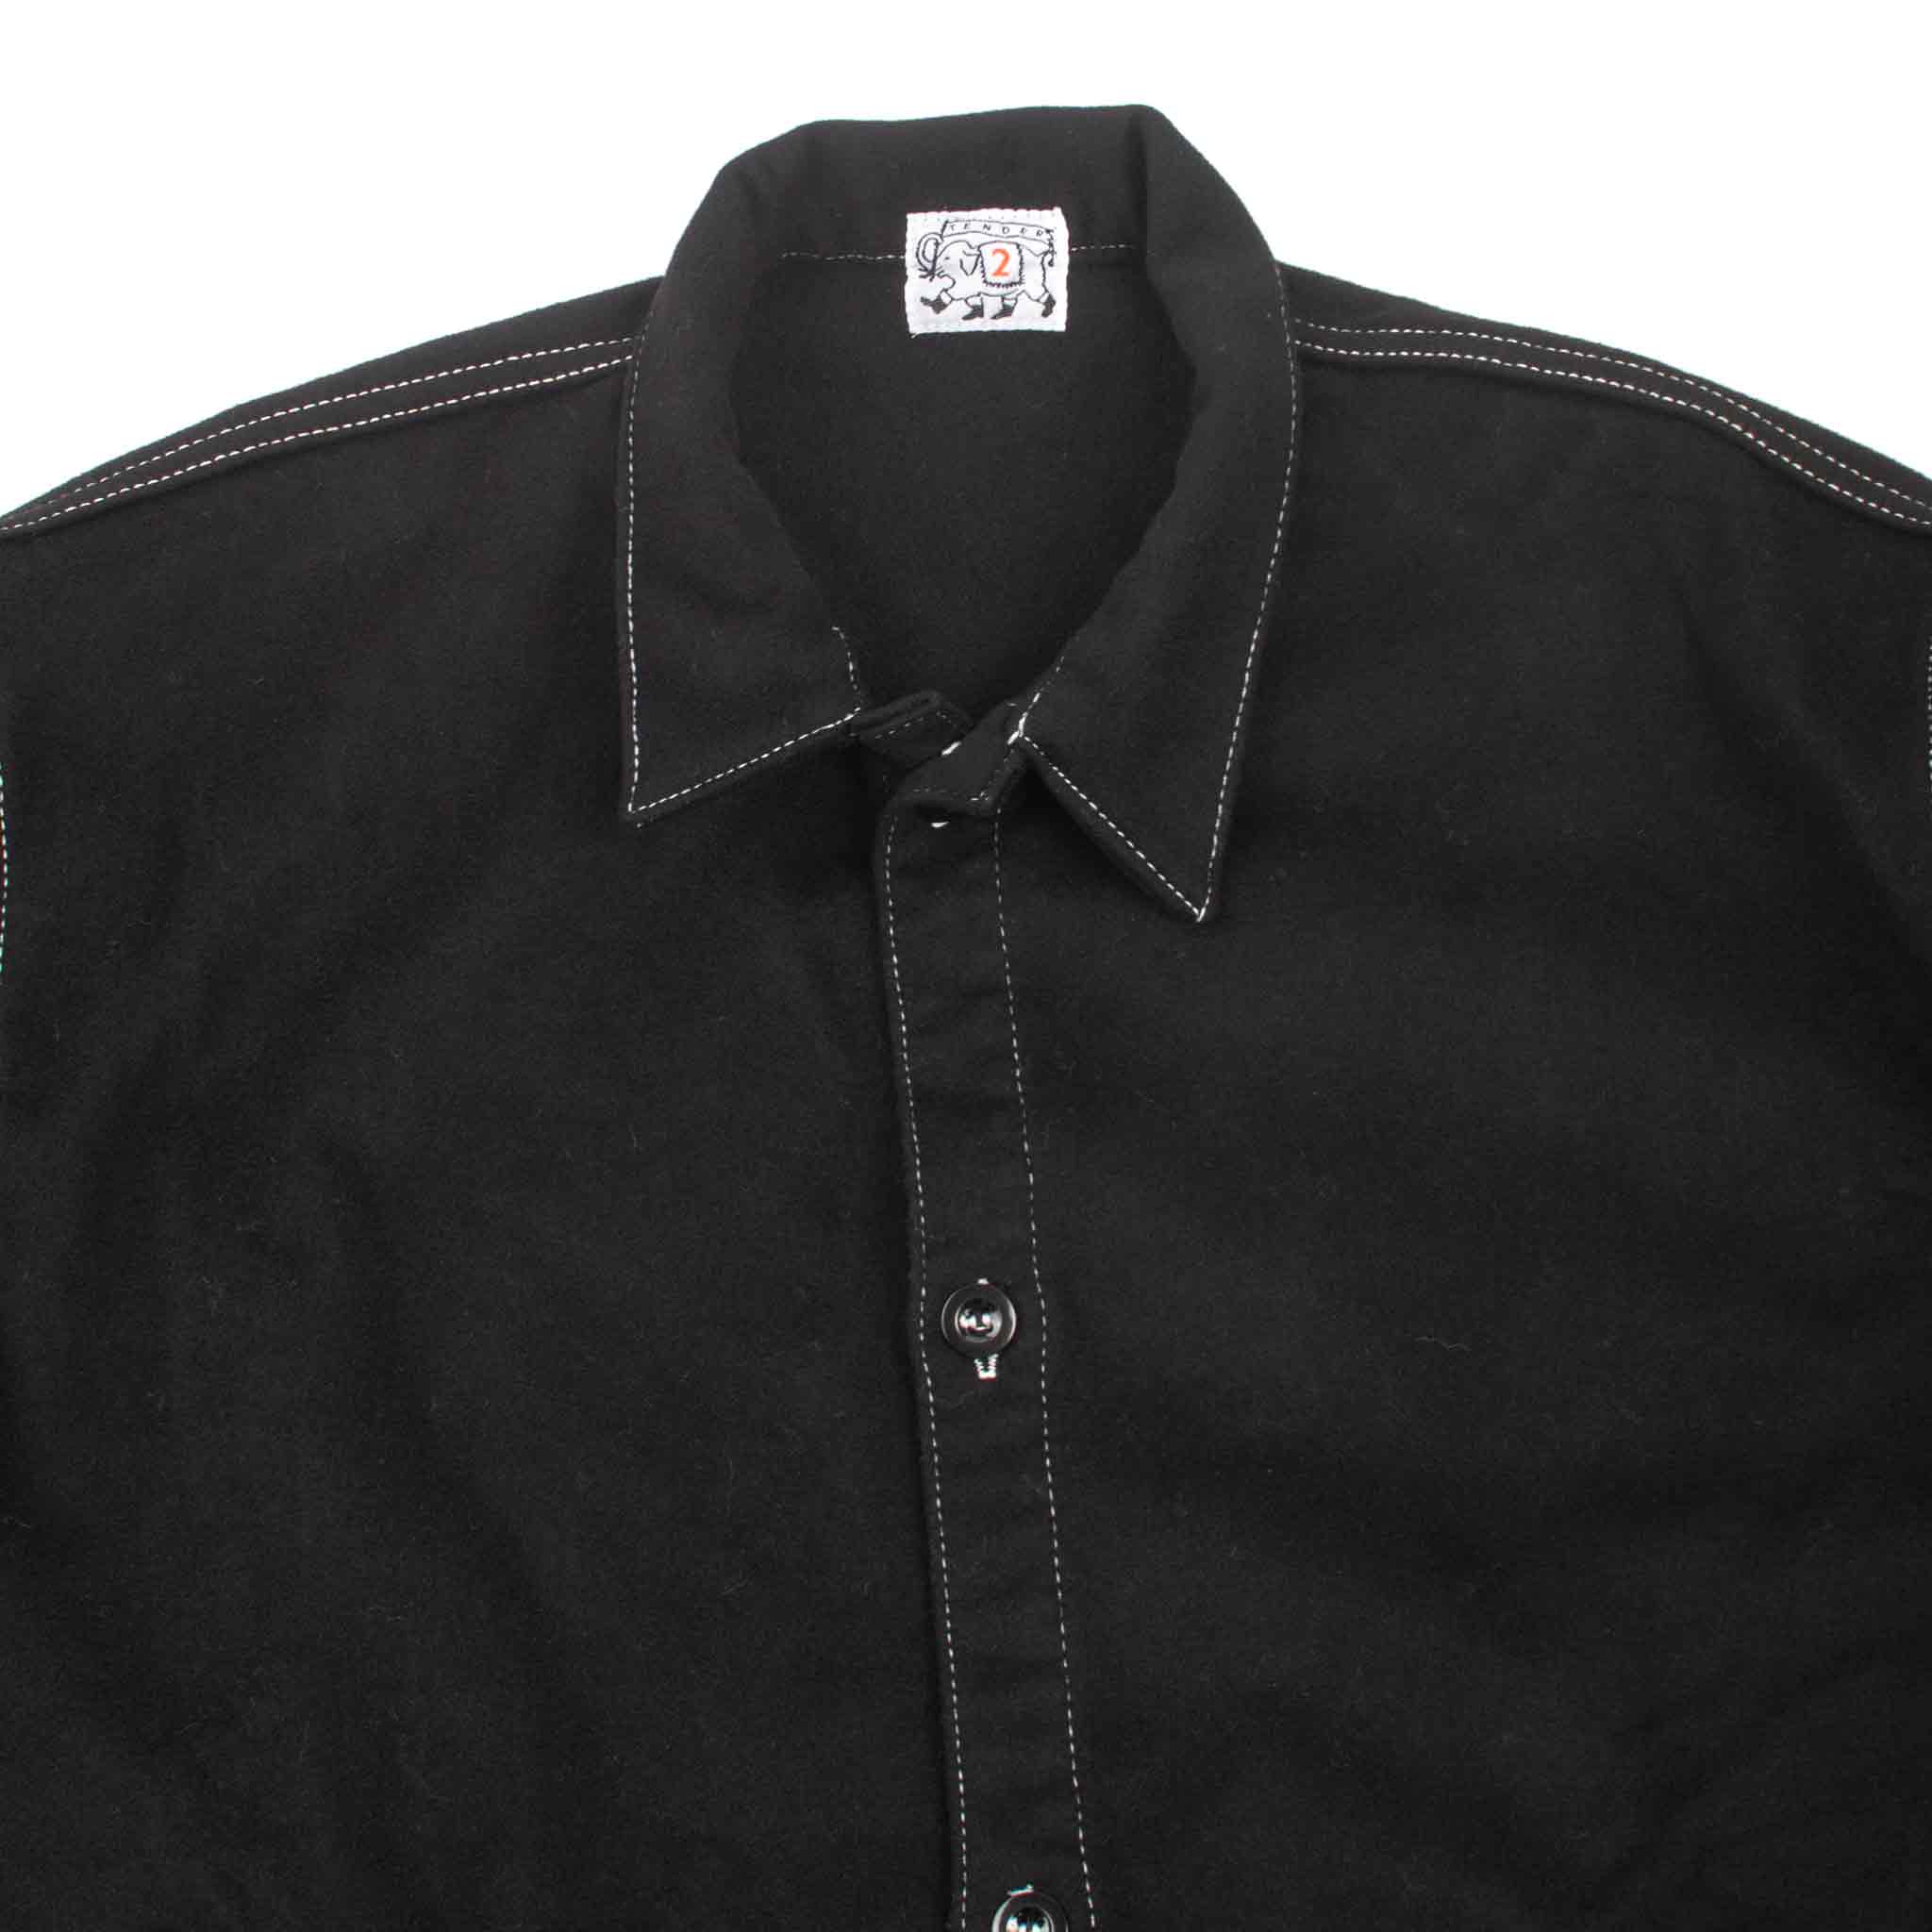 Tender Type WS420 Weaver's Stock Tail Shirt Black Wool Baize Detail